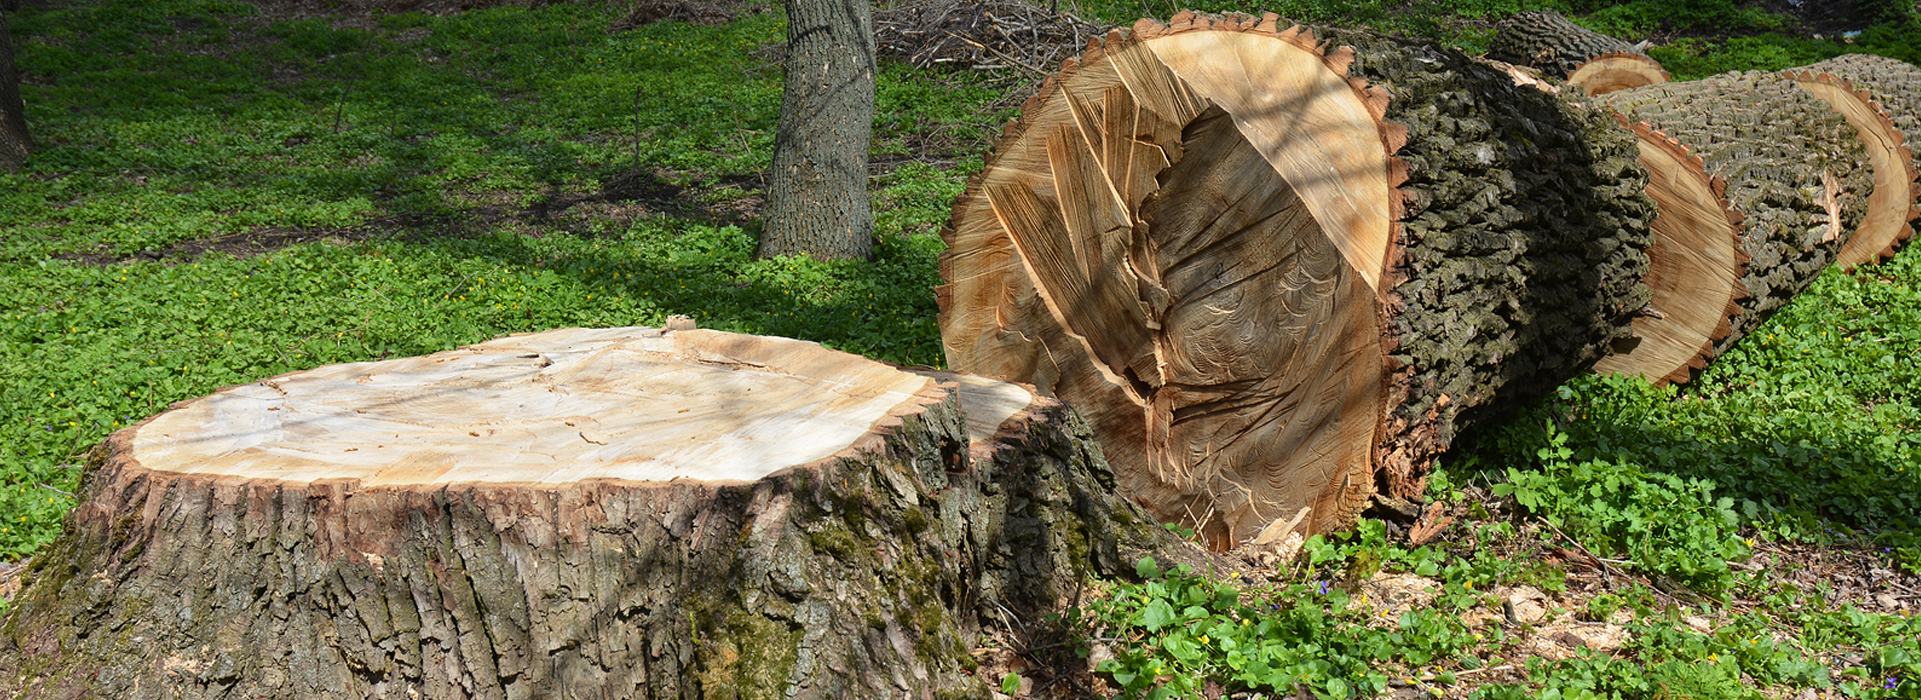 cover tree stump